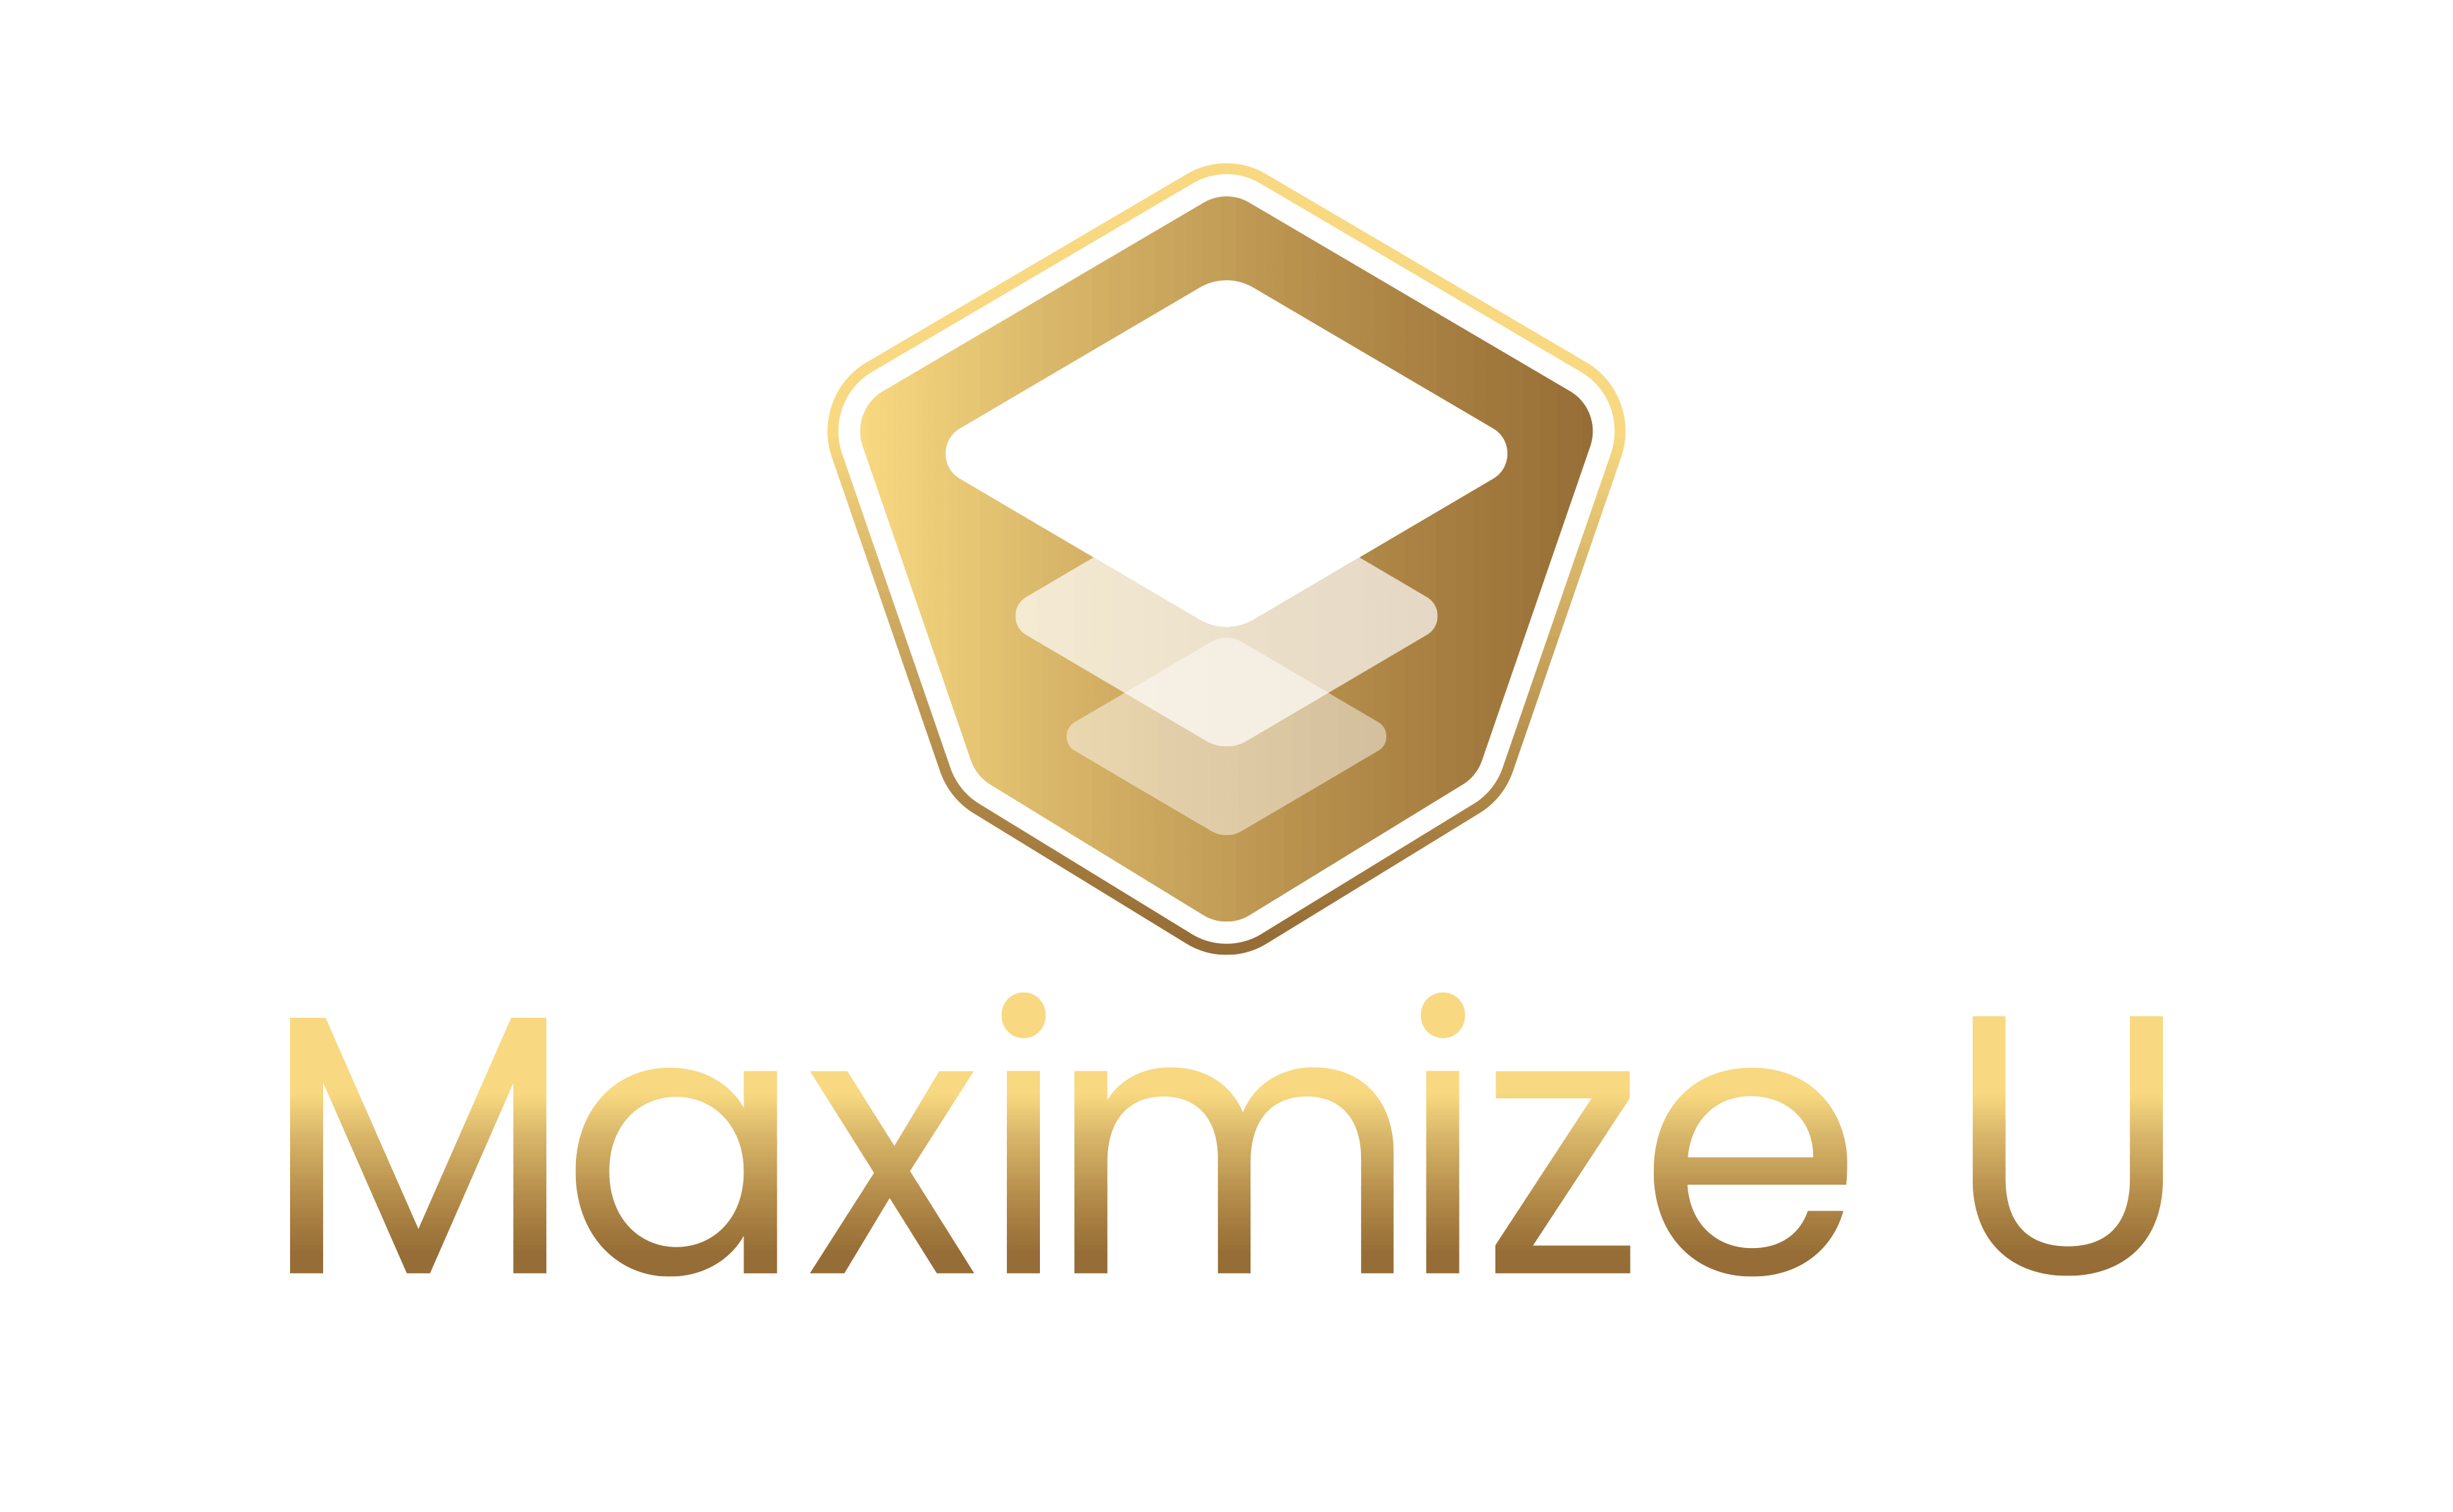 Company logo of MaximizeU